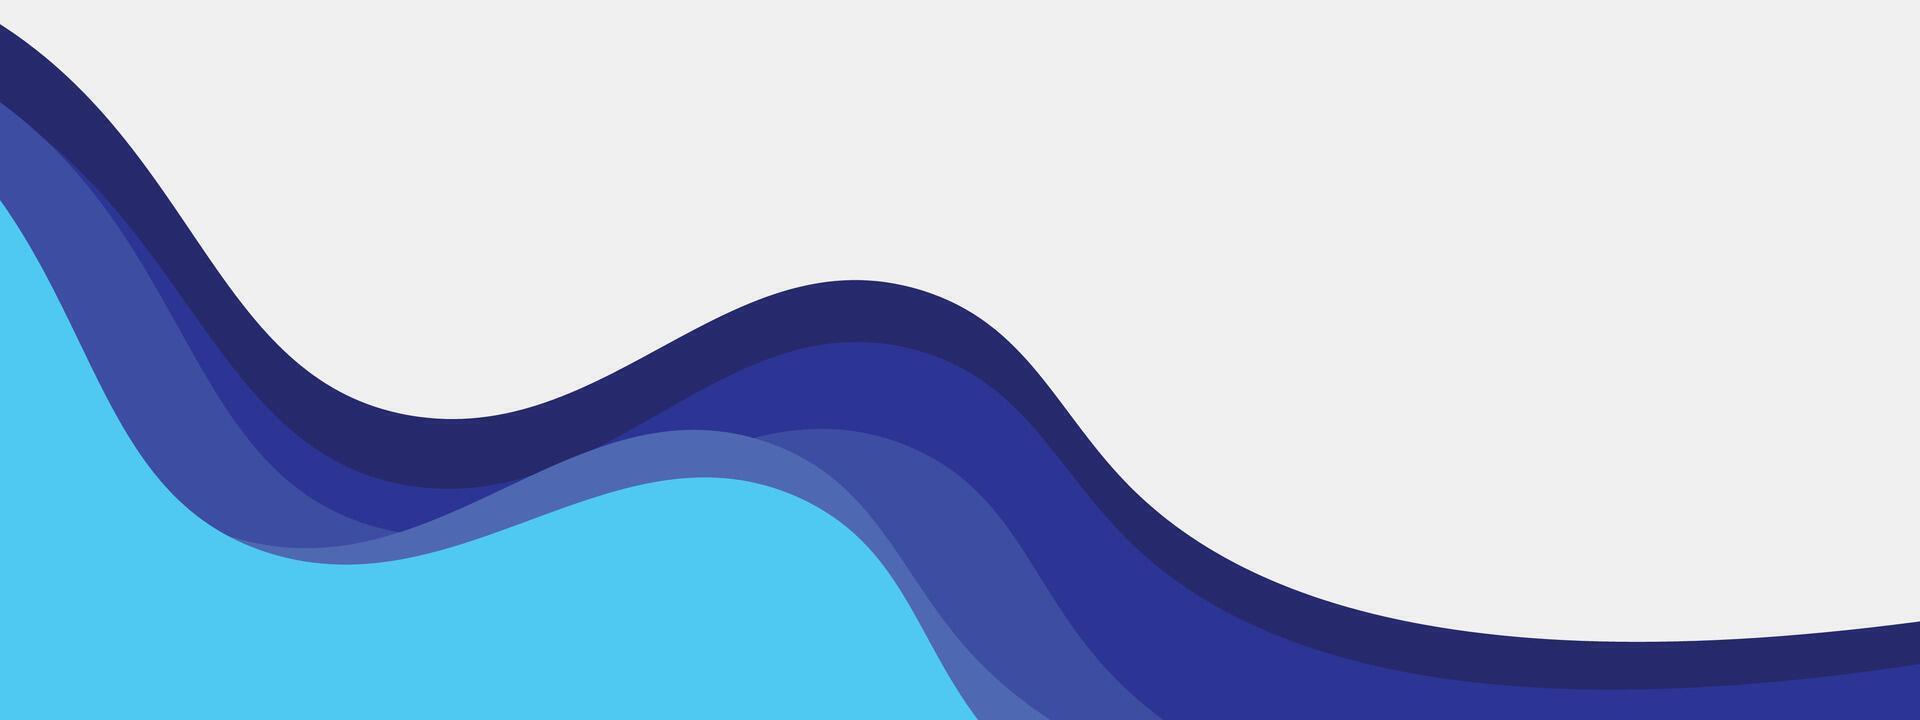 abstrakt blå lutning baner mall med dynamisk bakgrund kurva former. modern himmel blå företag webinar horisontell baner design för webb, bakgrund, broschyr, hemsida, landning sida, presentation vektor